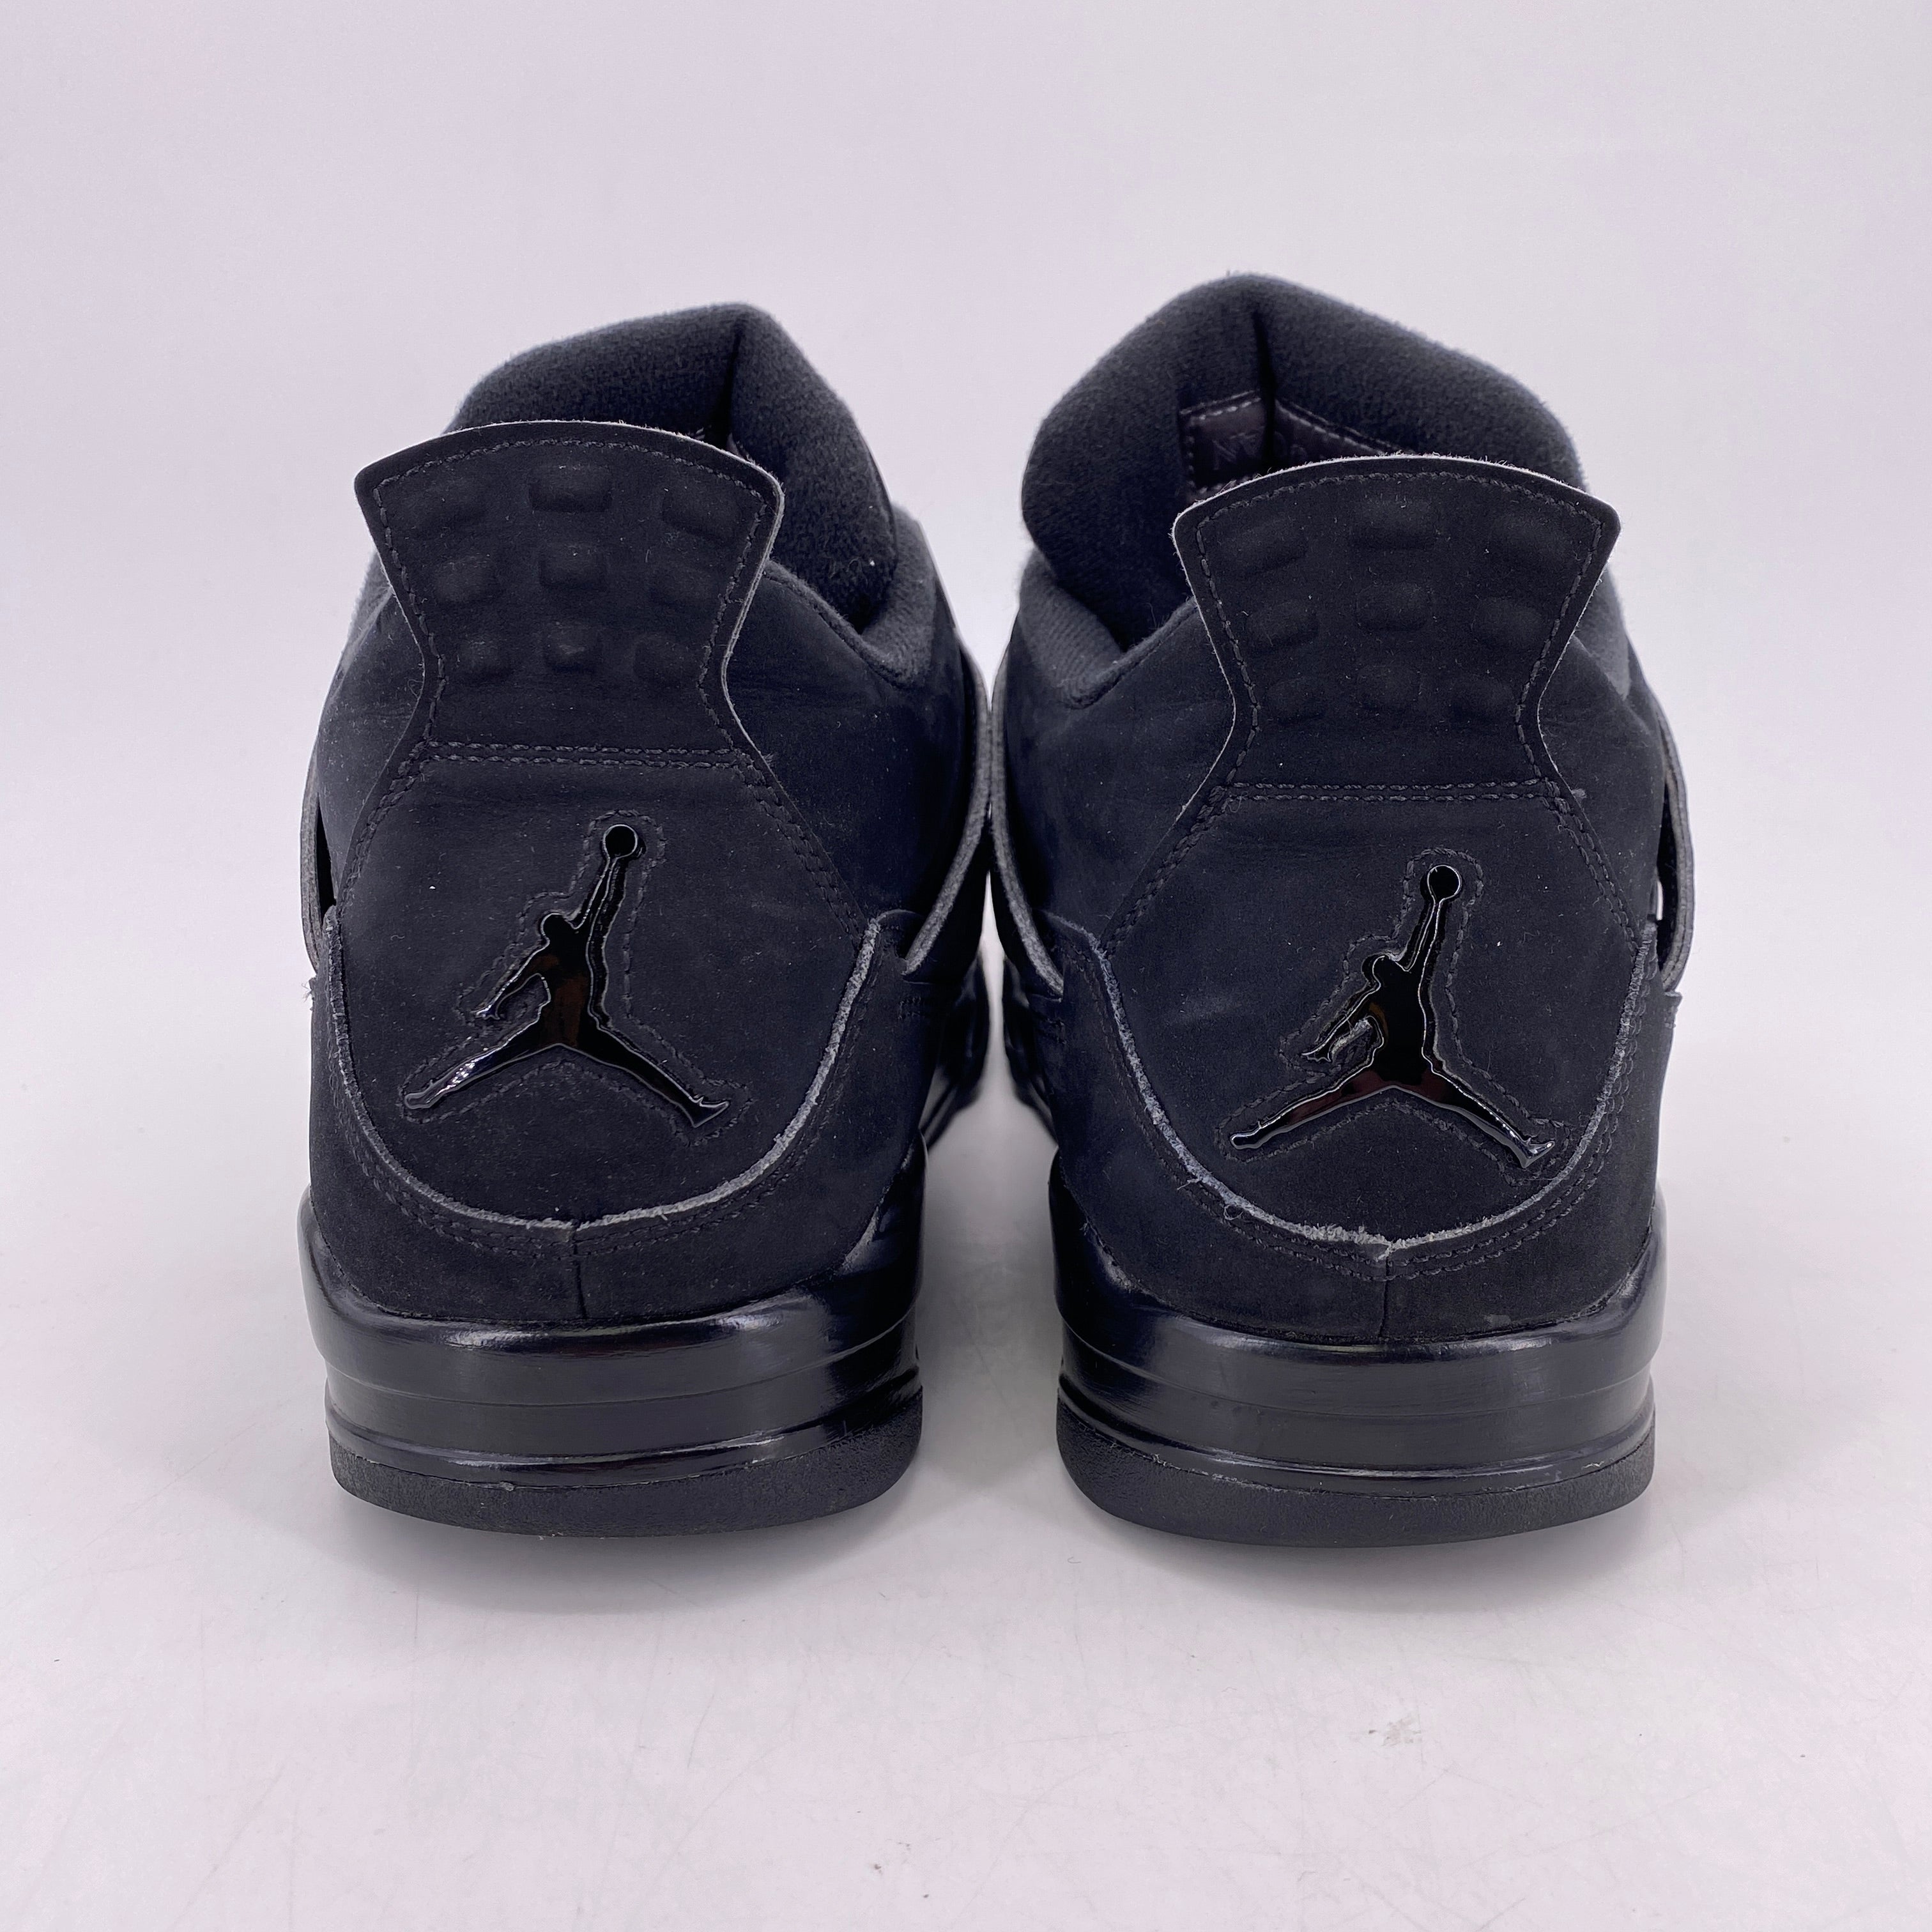 Air Jordan 4 Retro &quot;Black Cat&quot; 2020 Used Size 11